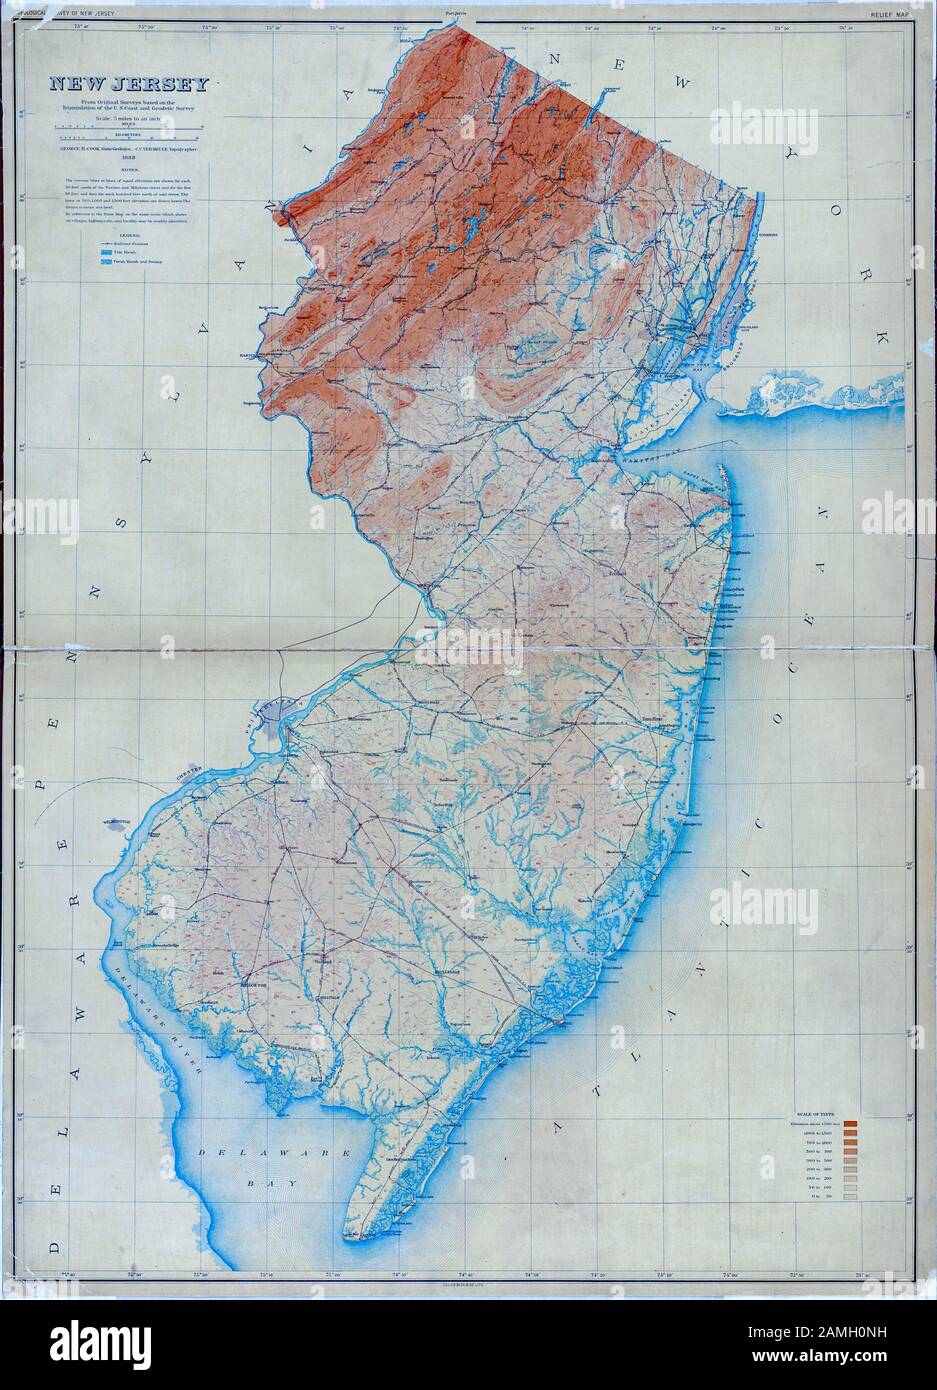 Mappa dei colori del New Jersey, uno stato nordorientale degli Stati Uniti, che mostra l'Oceano Atlantico e la baia del Delaware, pubblicato dal New Jersey Geological Survey e Julius Bien and Co, 1886. Dalla Biblioteca Pubblica Di New York. () Foto Stock